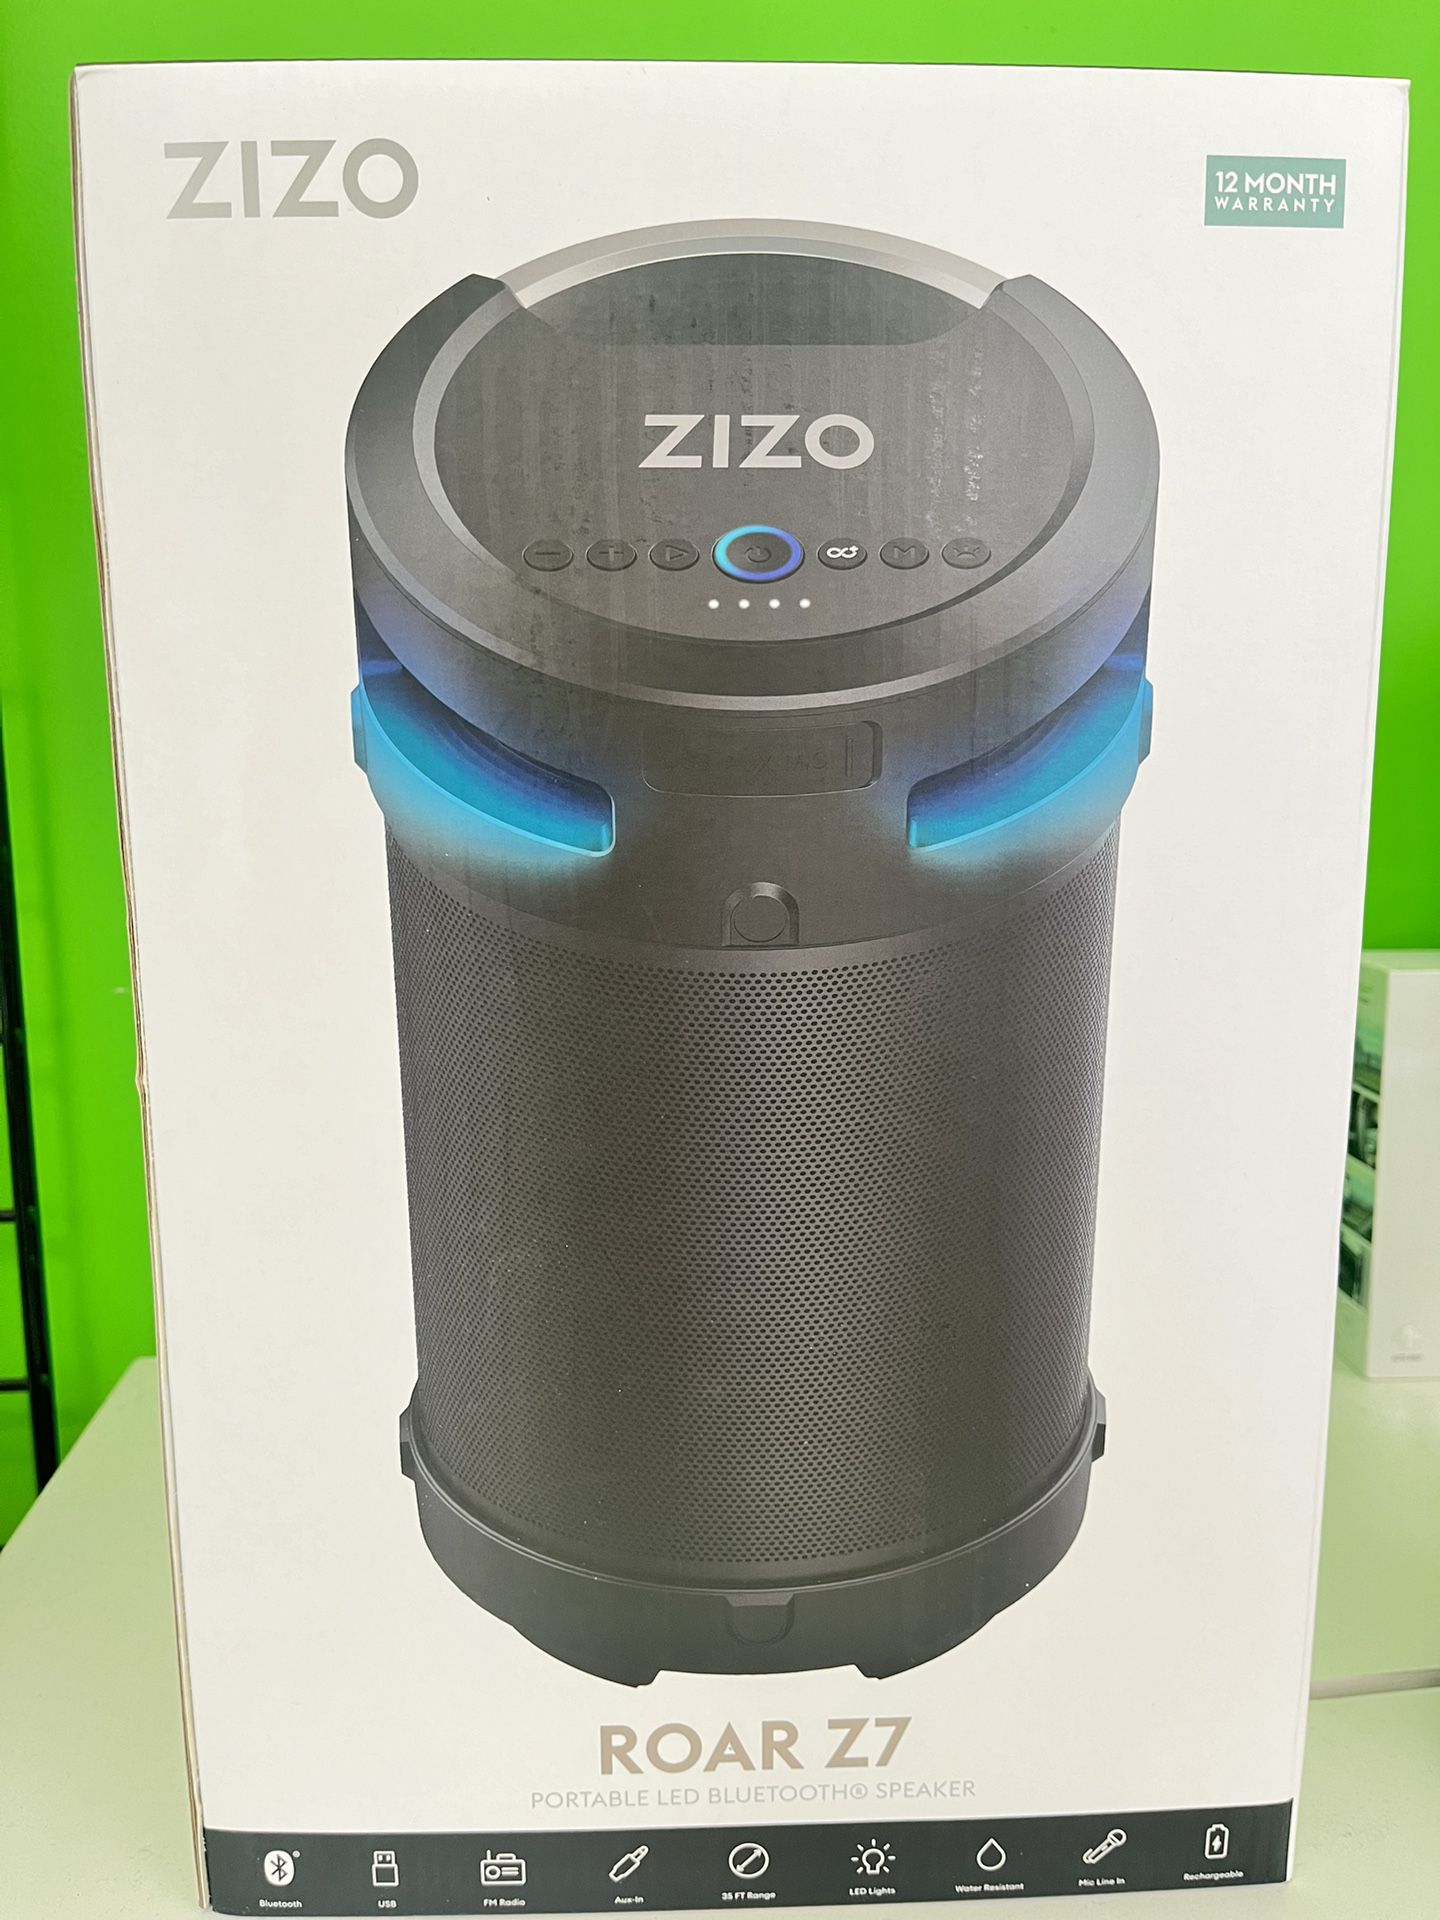 ROAR Z7 Bluetooth Speaker‼️iPhone 11‼️(7627) Culebra Rd‼️